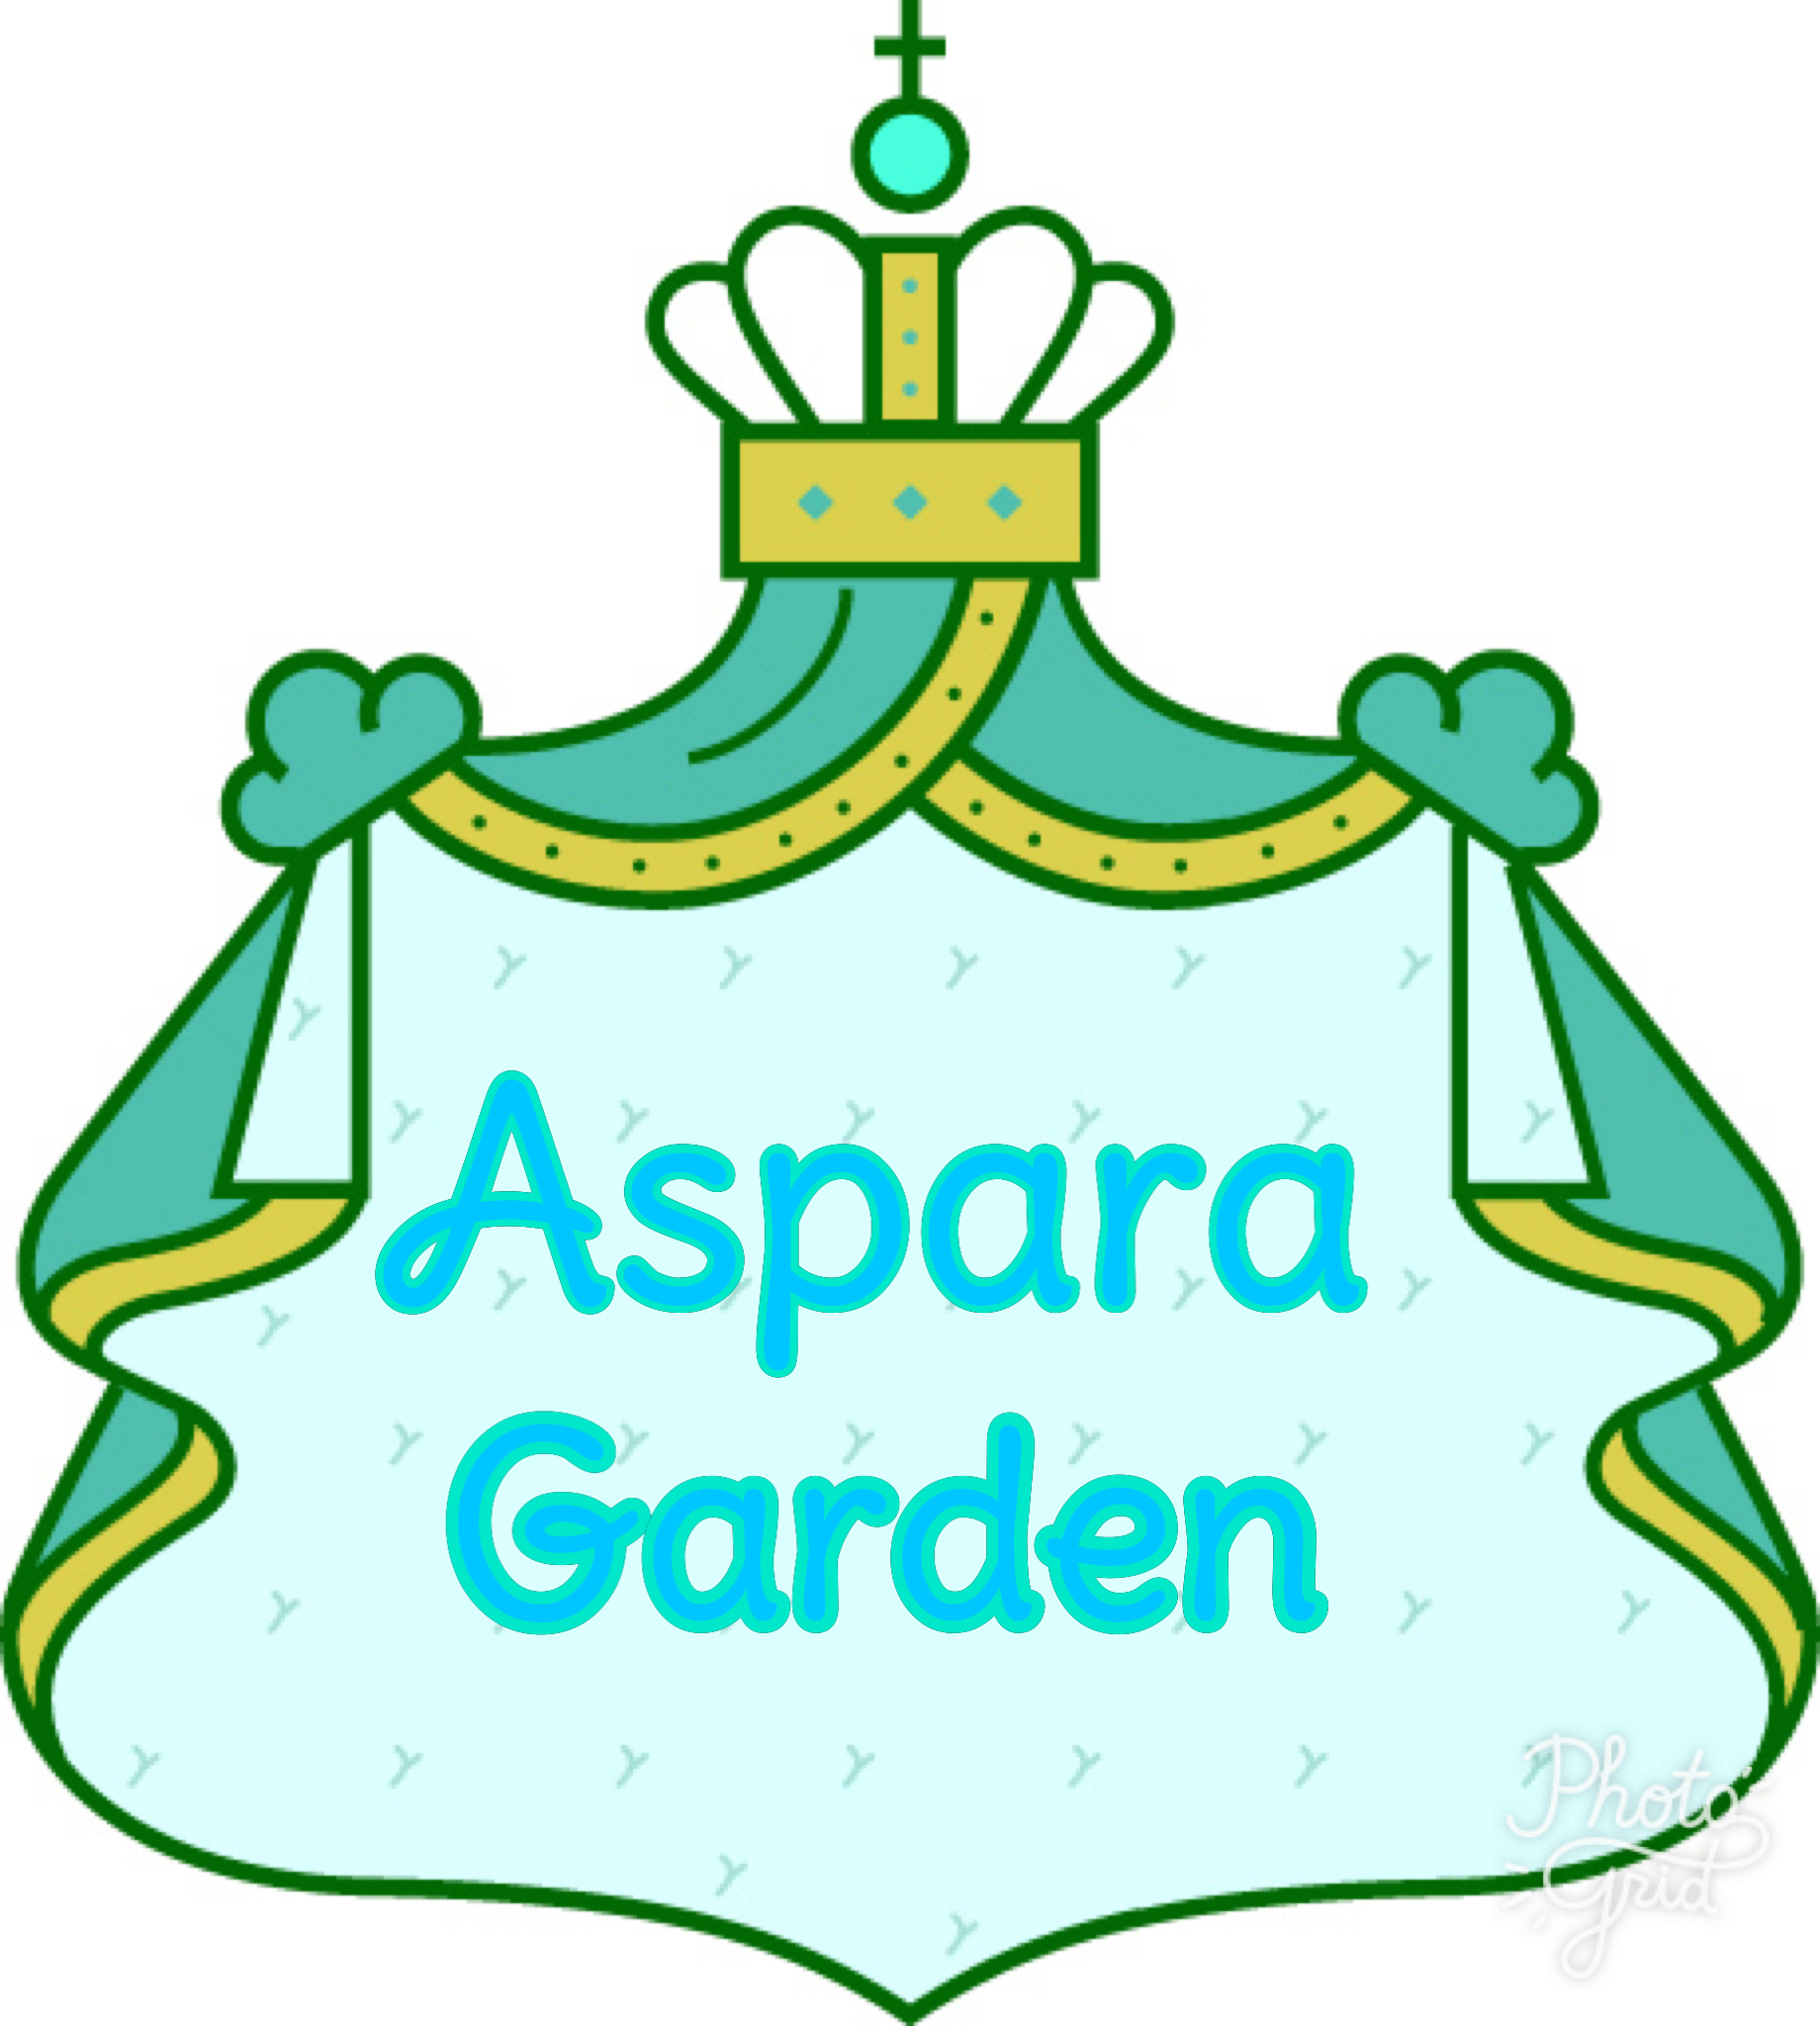 Aspara Garden